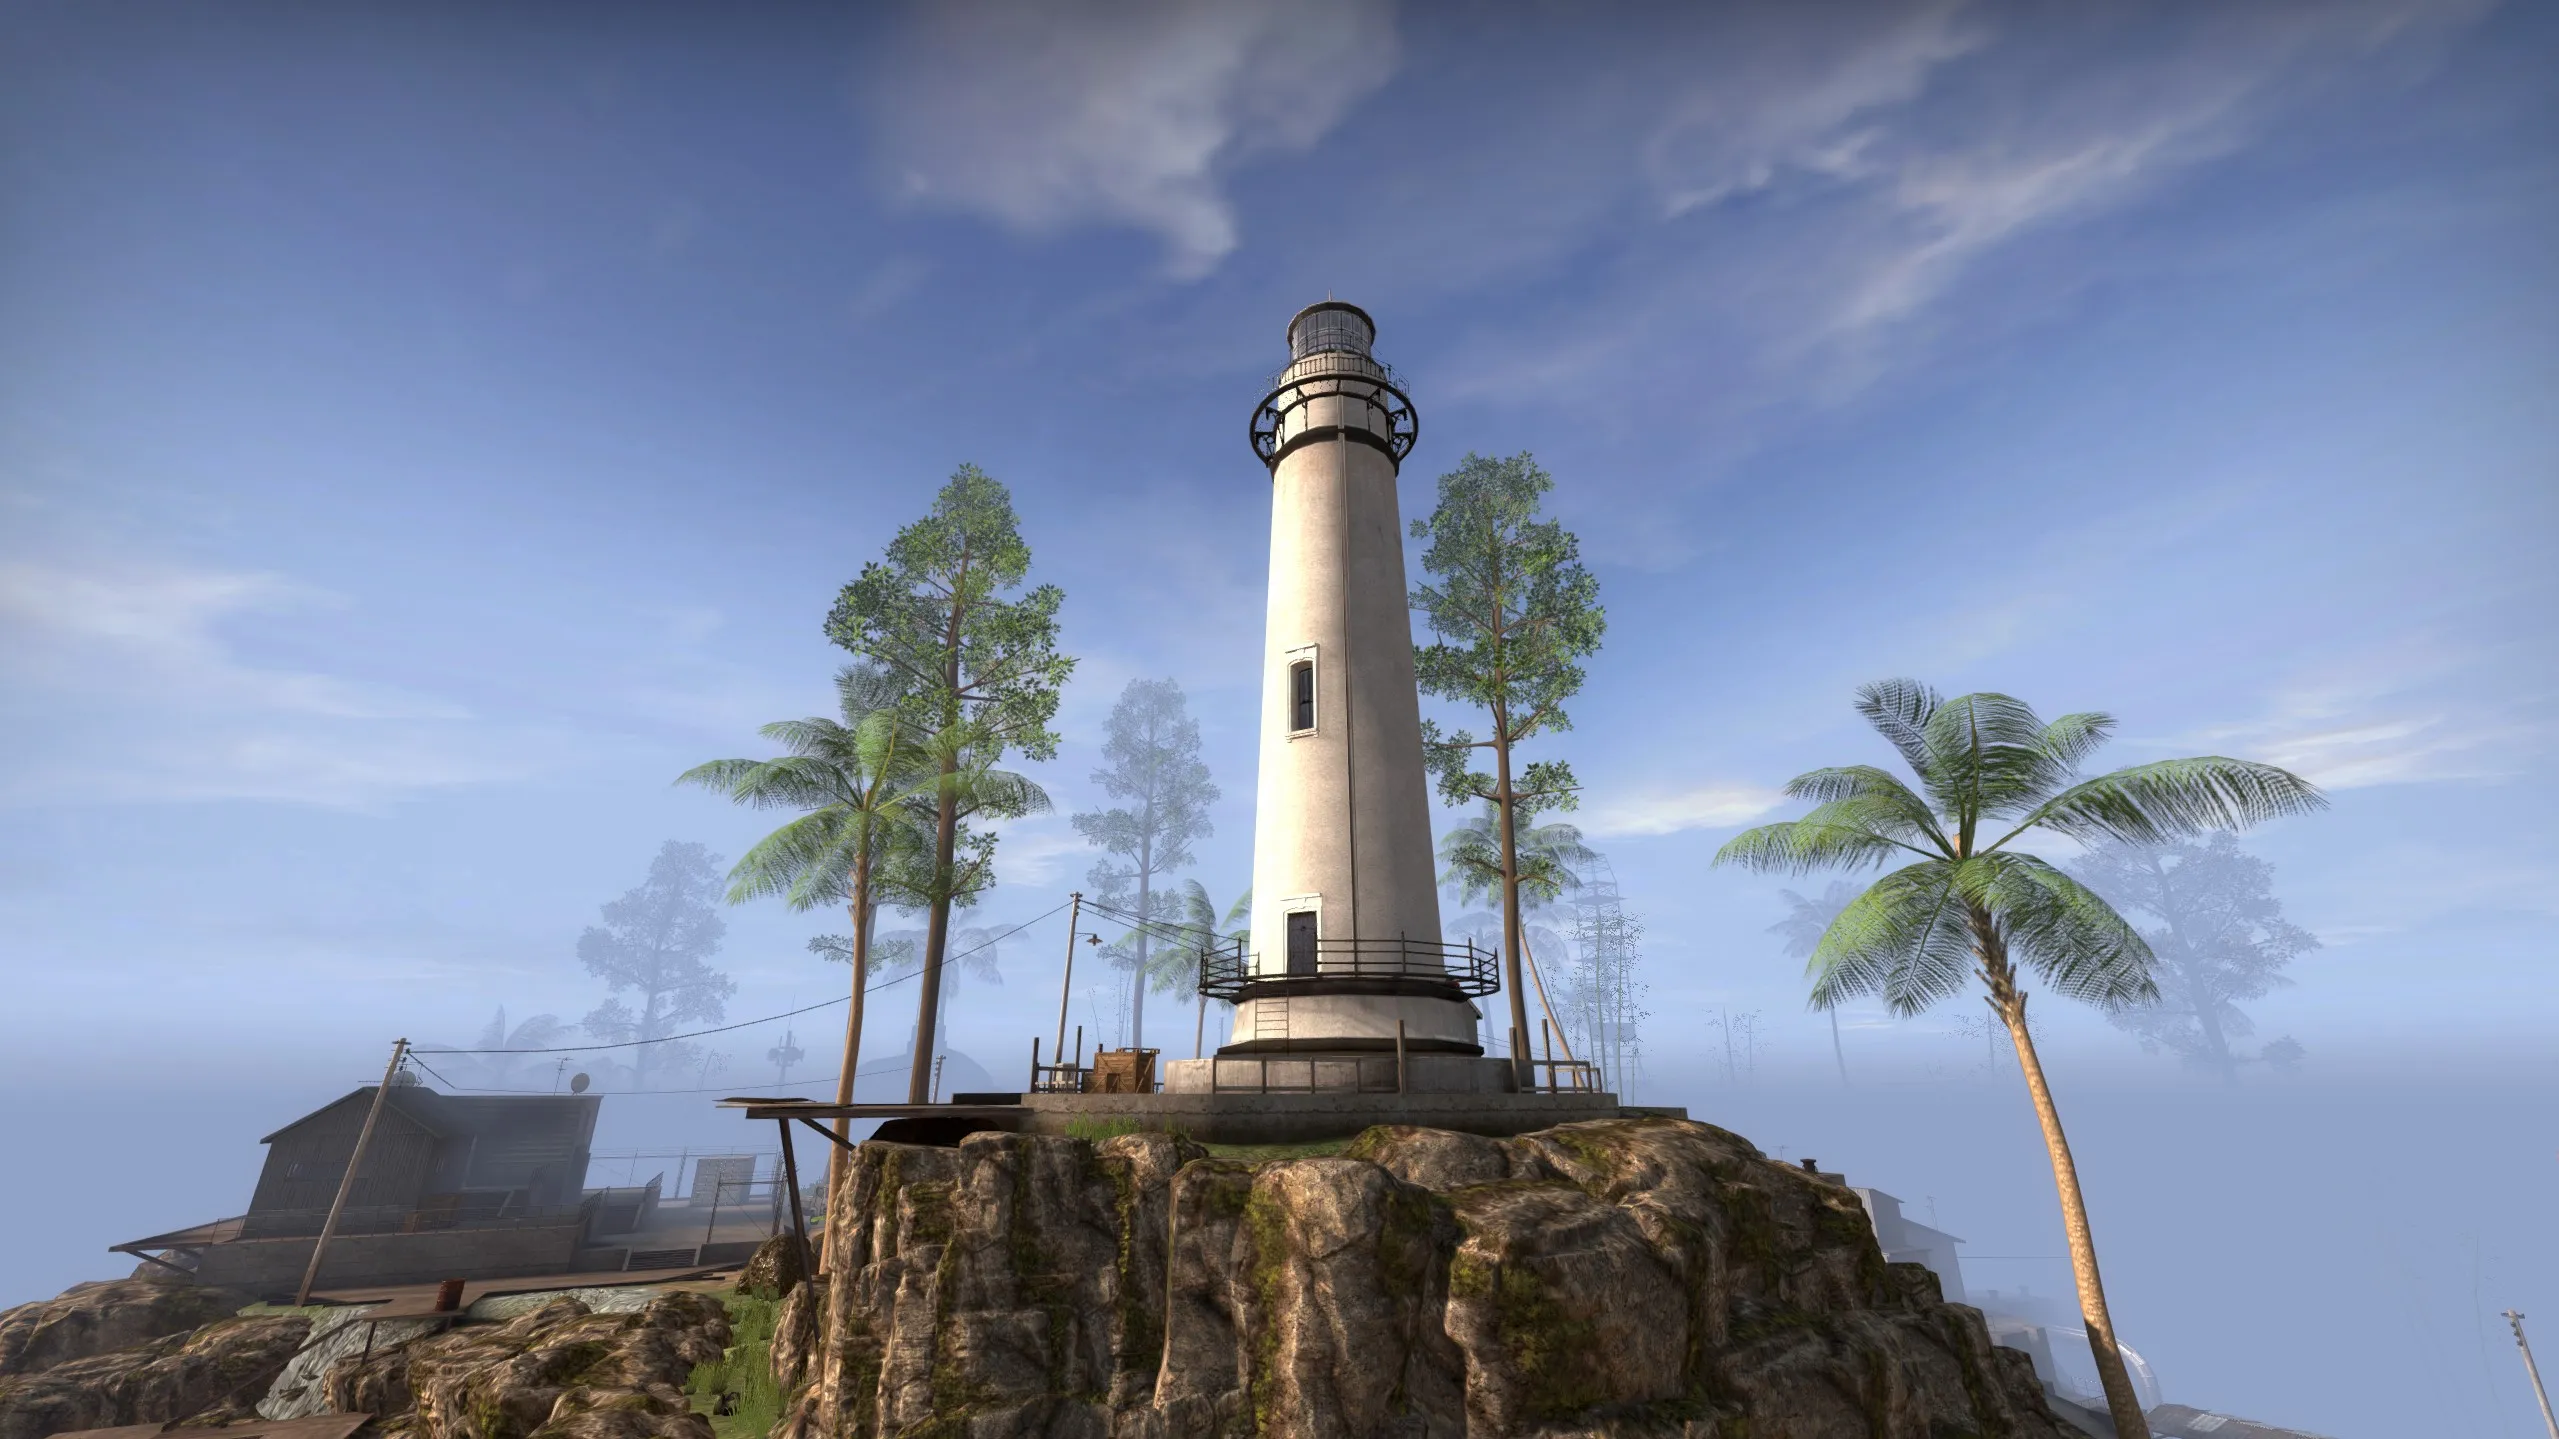 CS GO Danger Zone Jungle Lighthouse